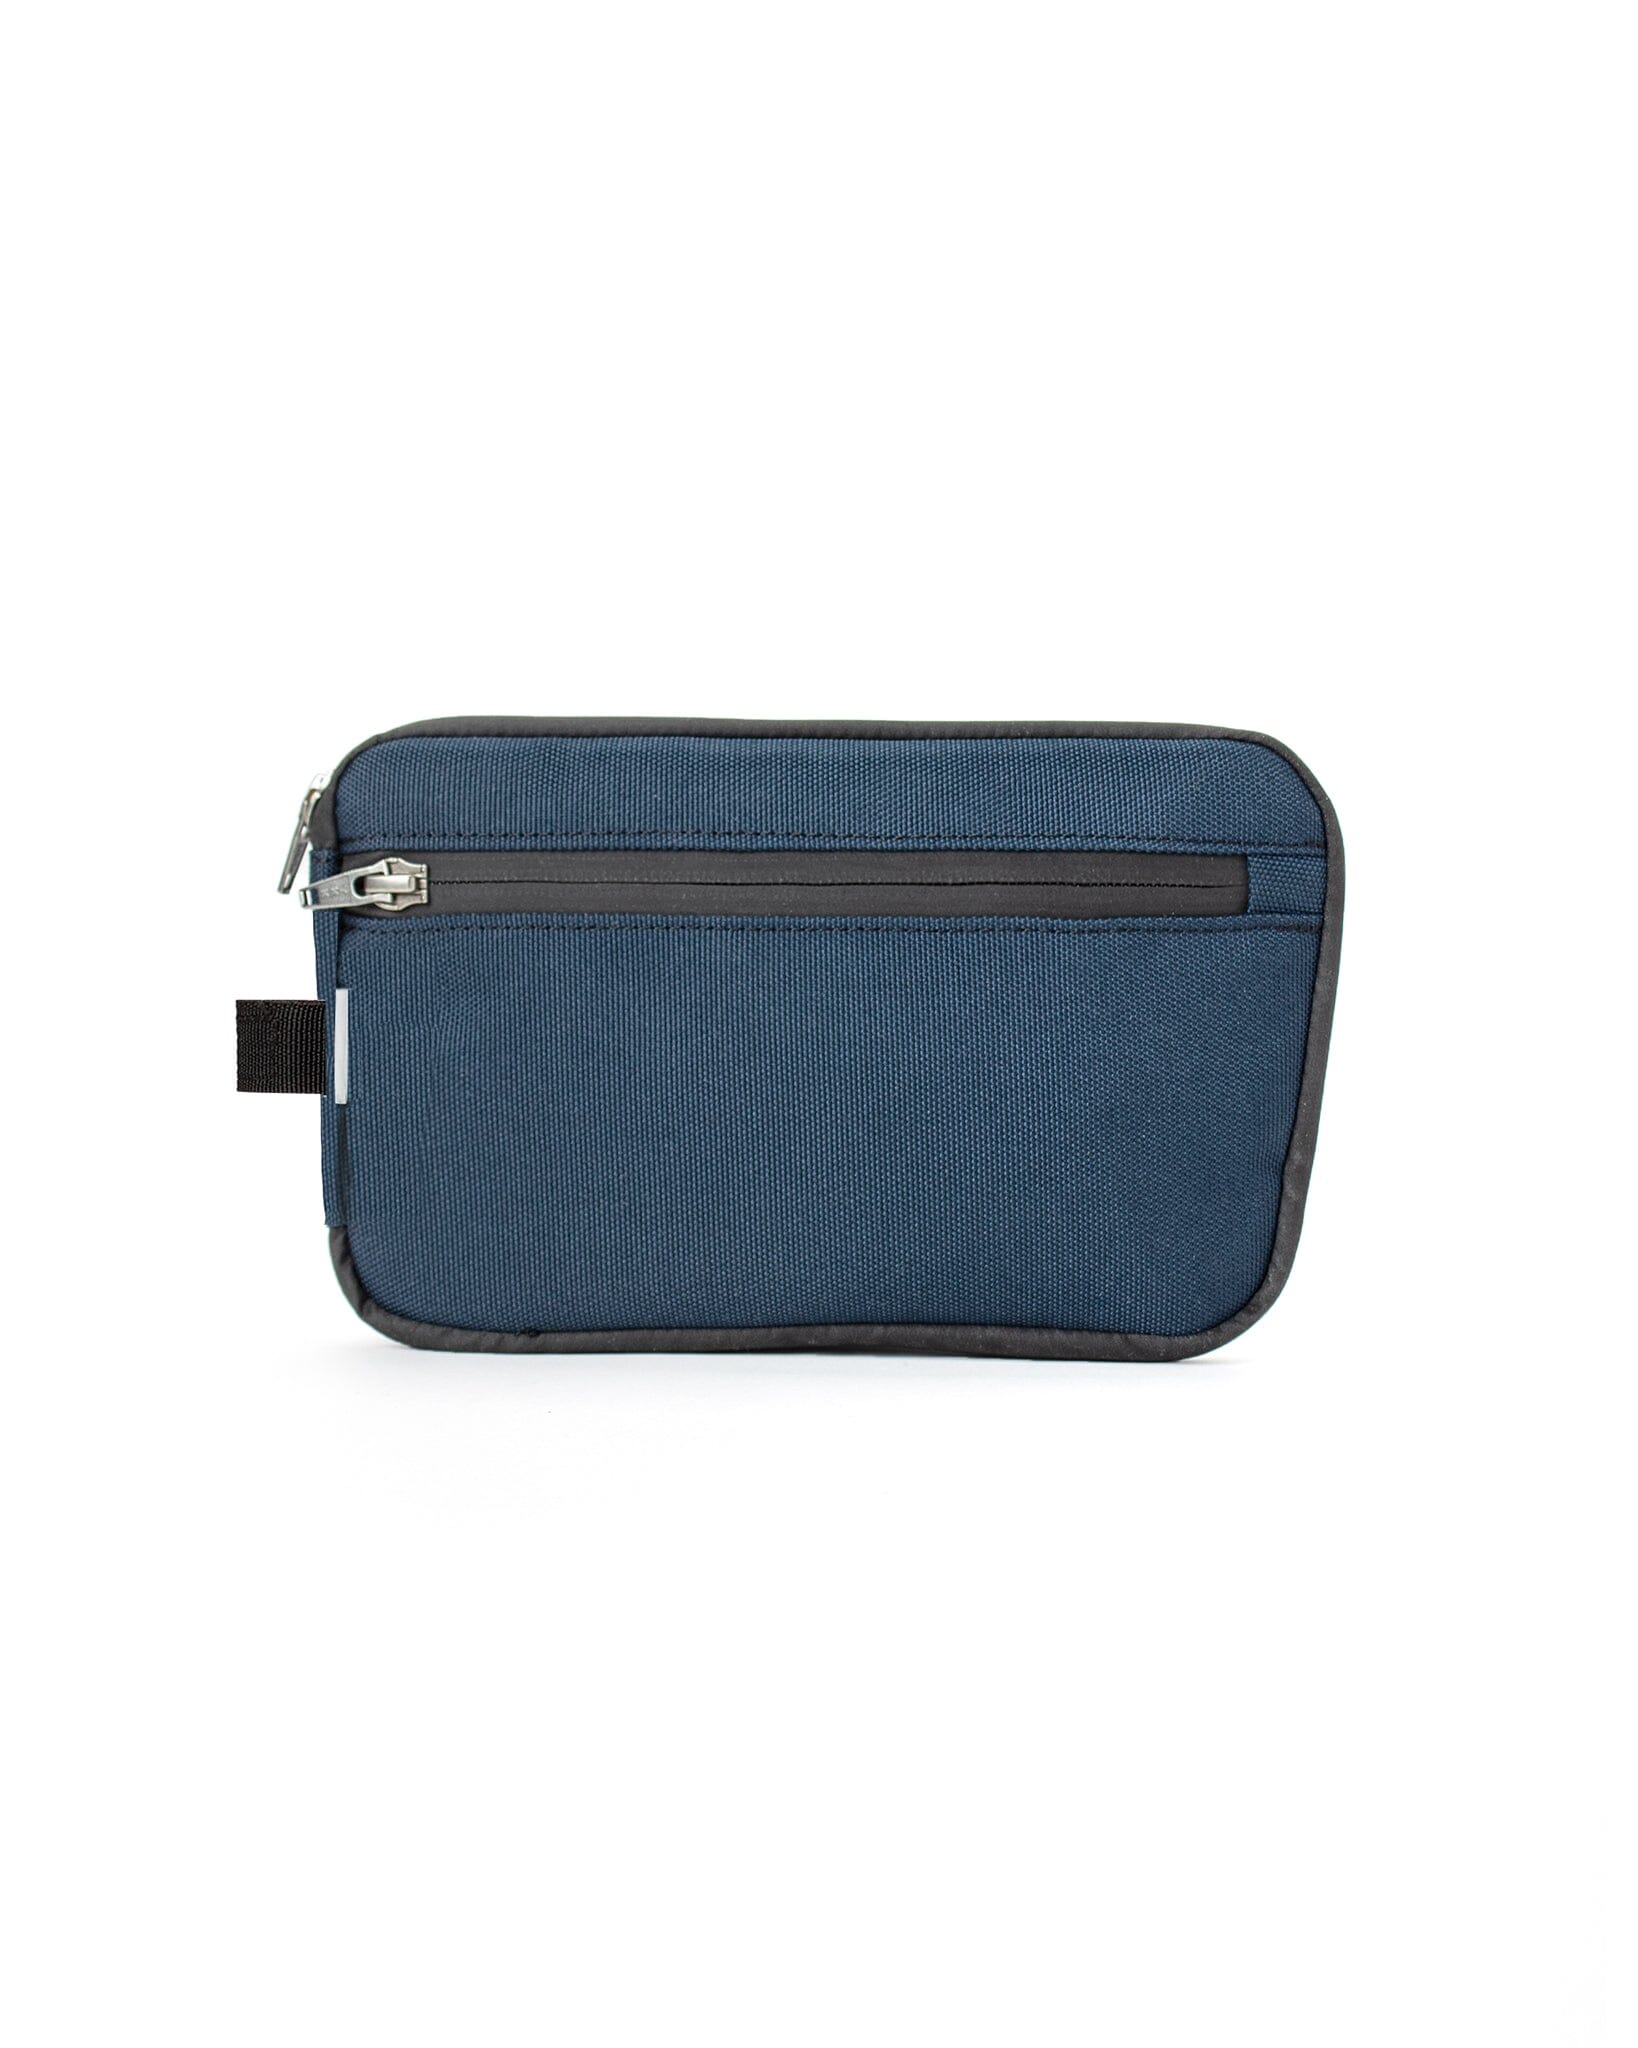 AUX™ Pocket - Lunar Blue Cordura Bag bolstr Navy No Strap 